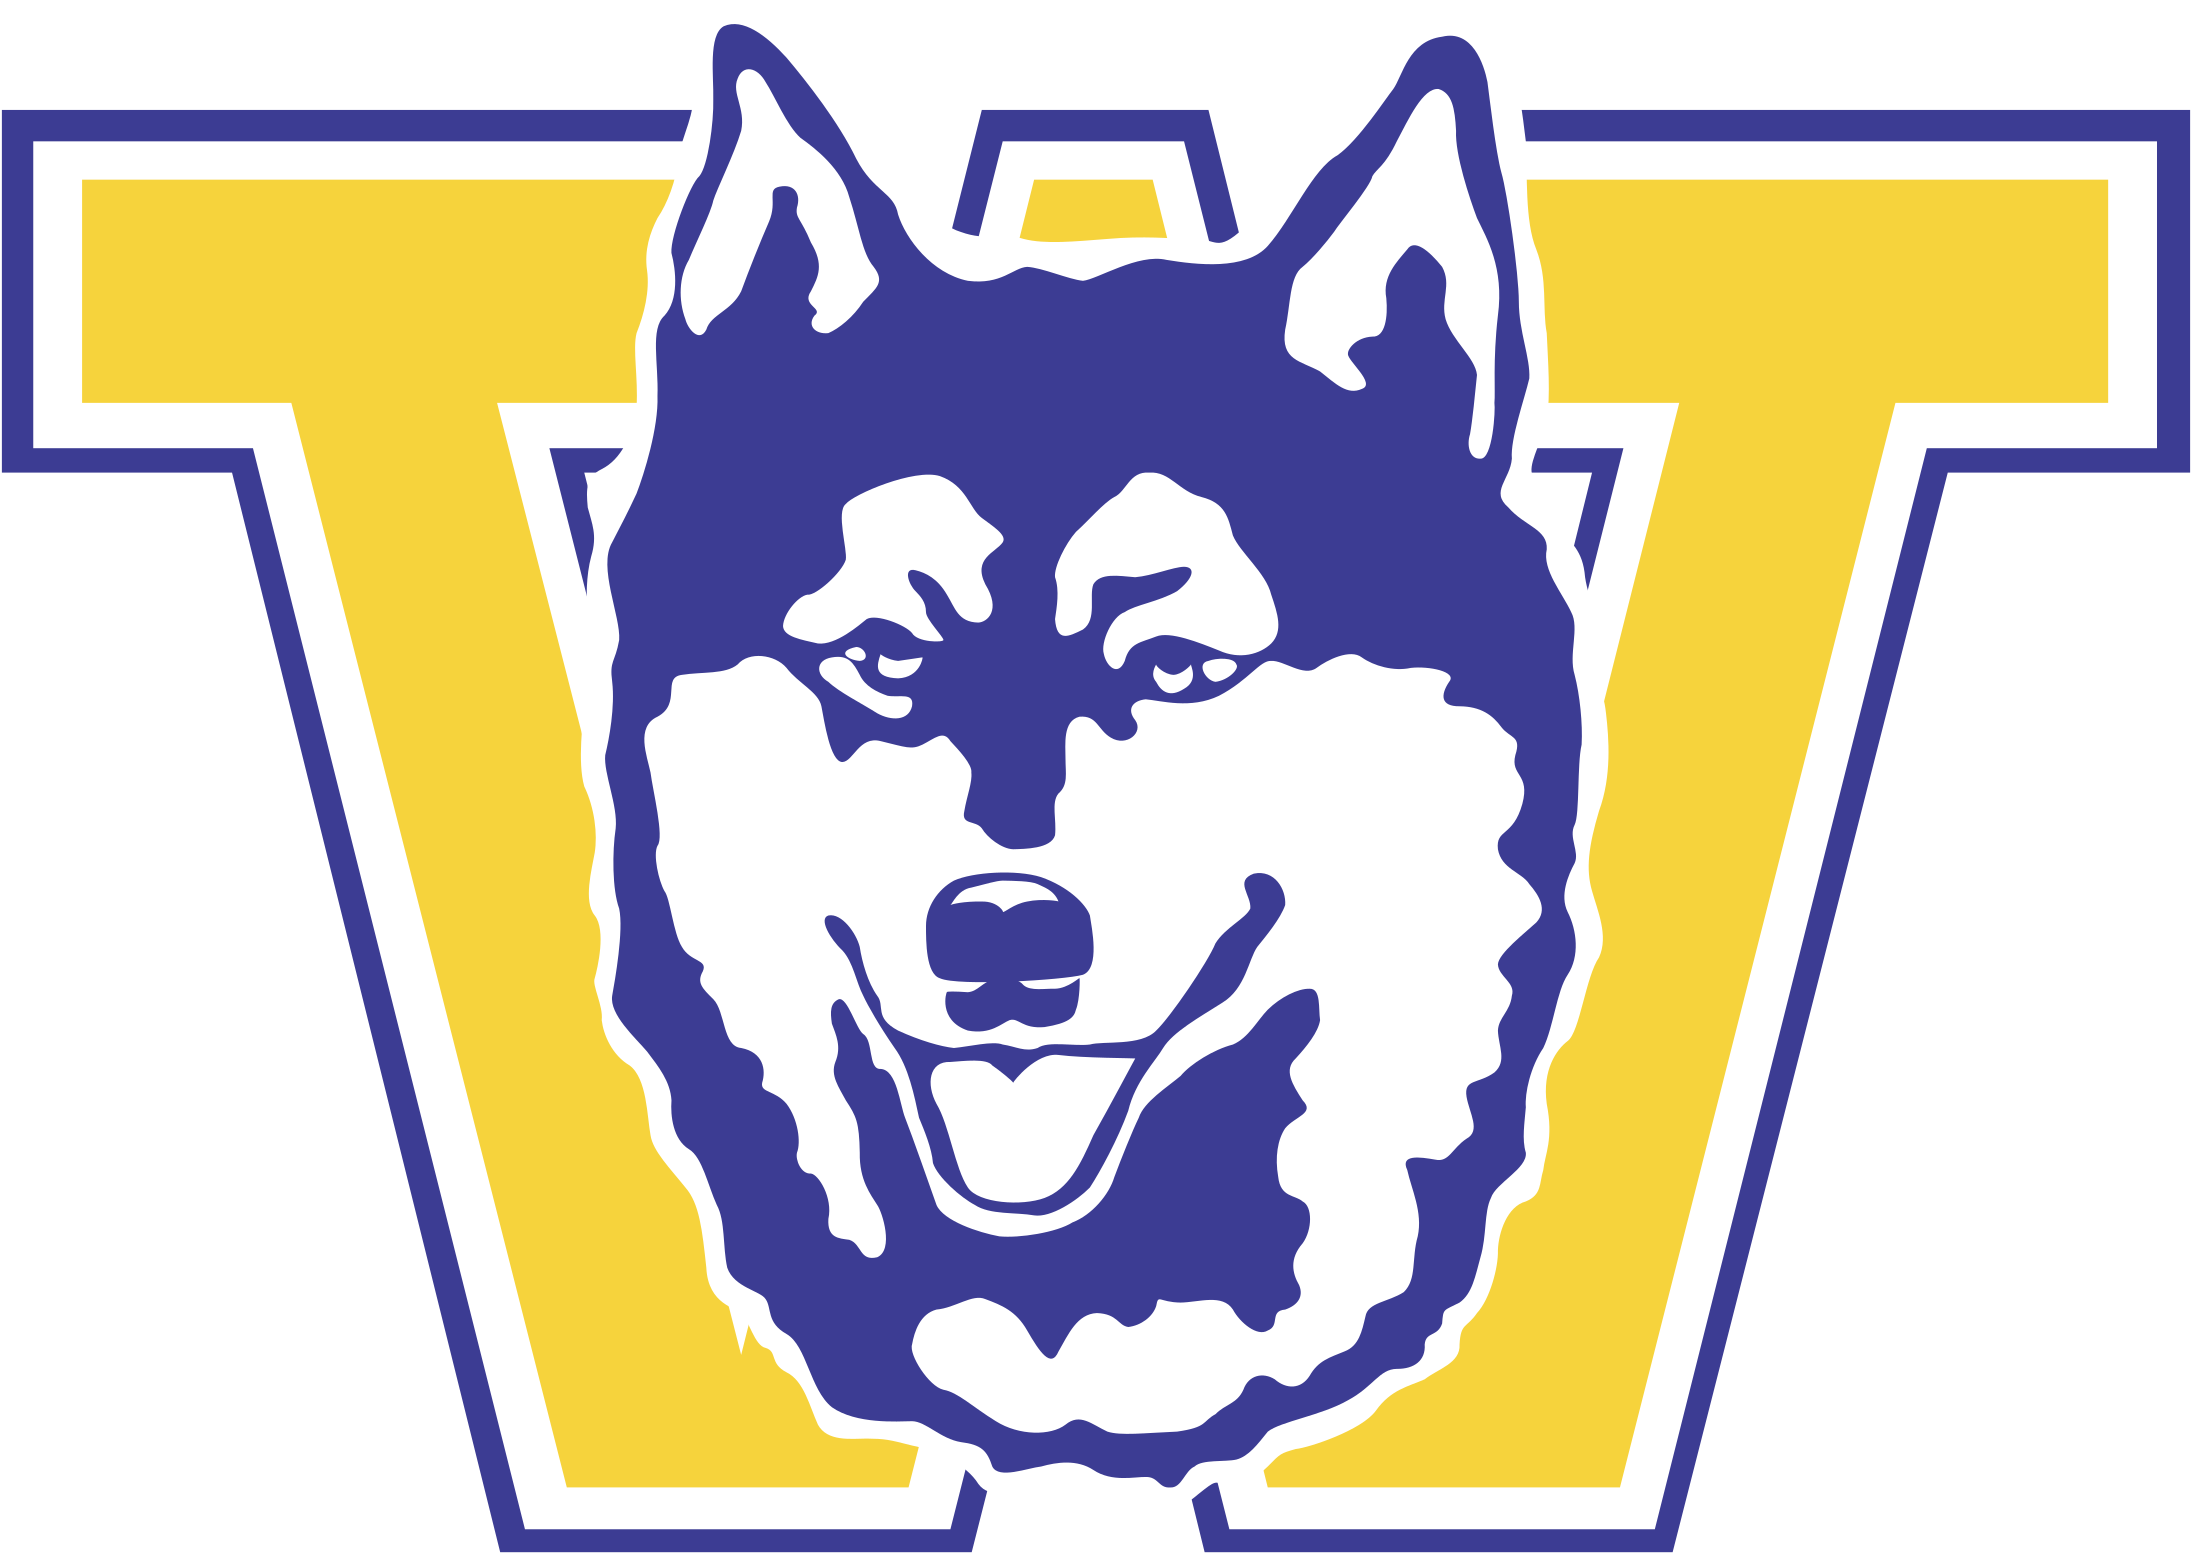 Washington Huskies Logo Black And White - University Of Washington Iphone (2400x2400)